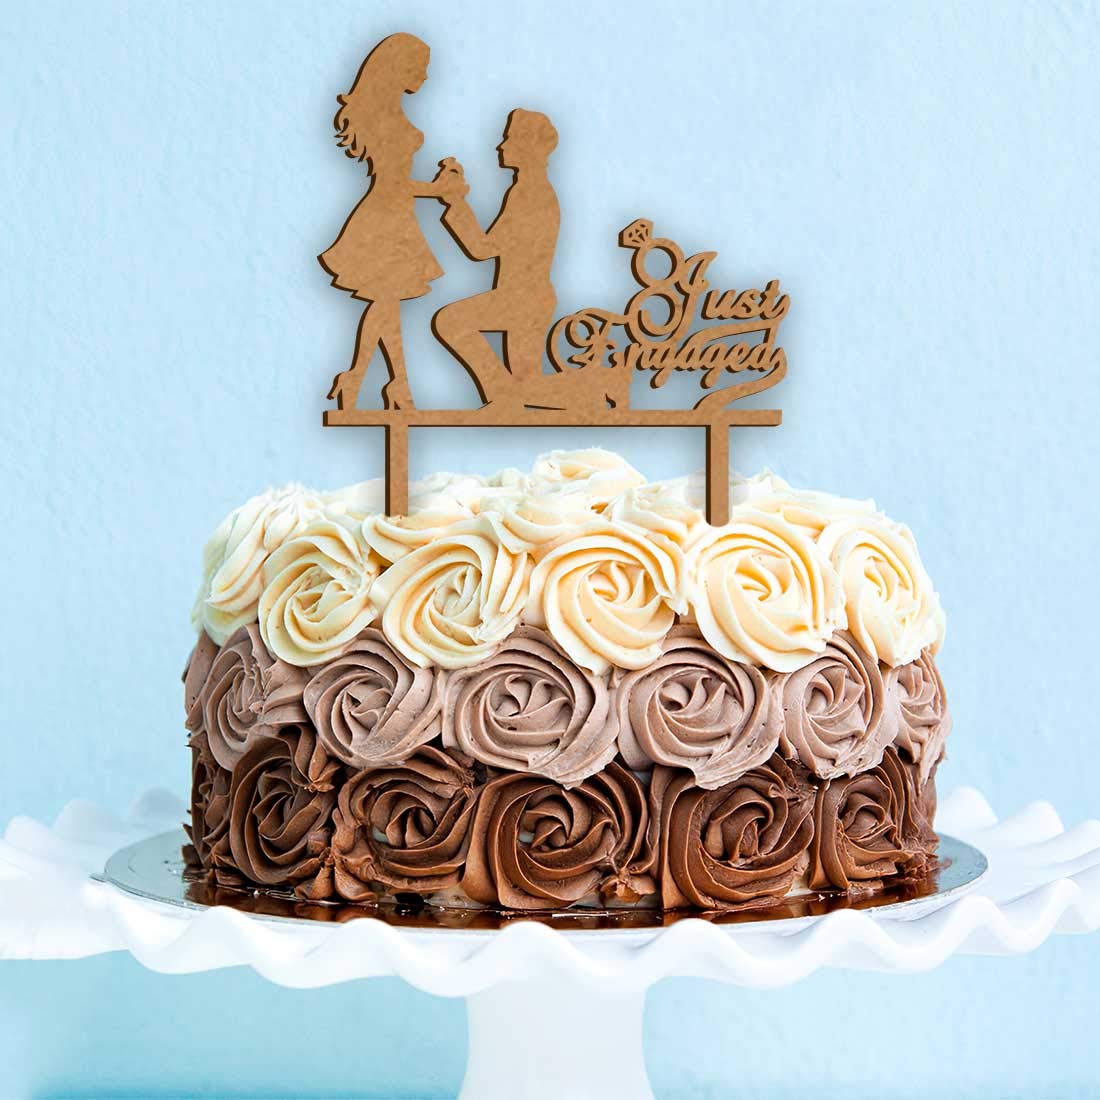 Every day cakes - Just engaged 💍💍🌹🌹 Flowers engagement cake design 💍💍  #byradwadraz #cakes #yummycakes #gift #handmade #vanilla #edibleart  #yummycakes #fondantcake #party #engagementcake #justengaged  #congratulations #engagement #engagementparty ...